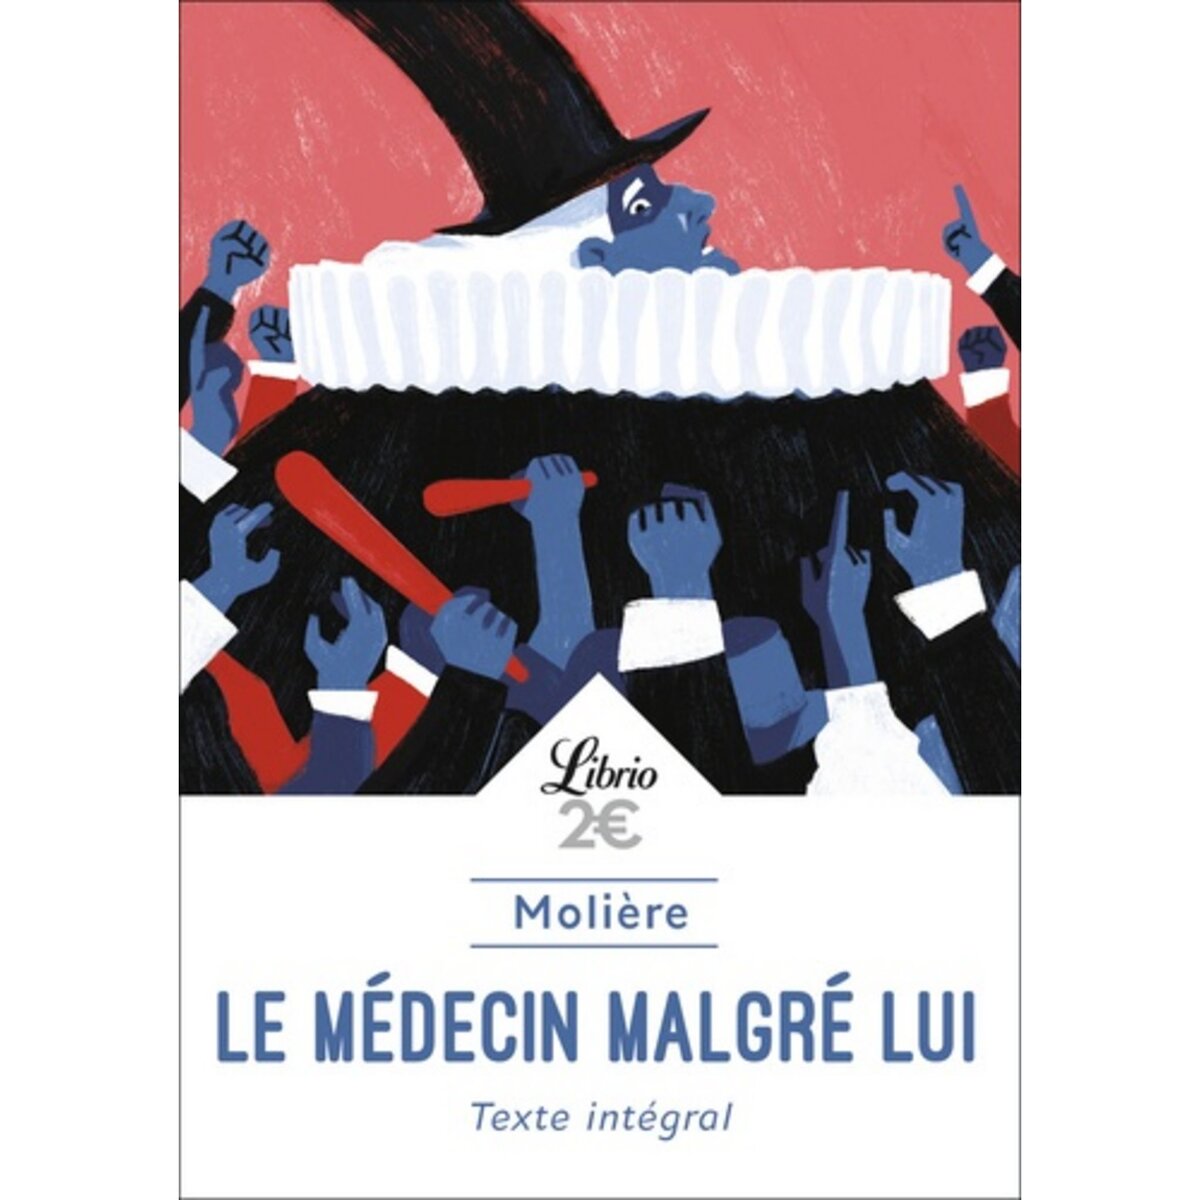  LE MEDECIN MALGRE LUI, Molière